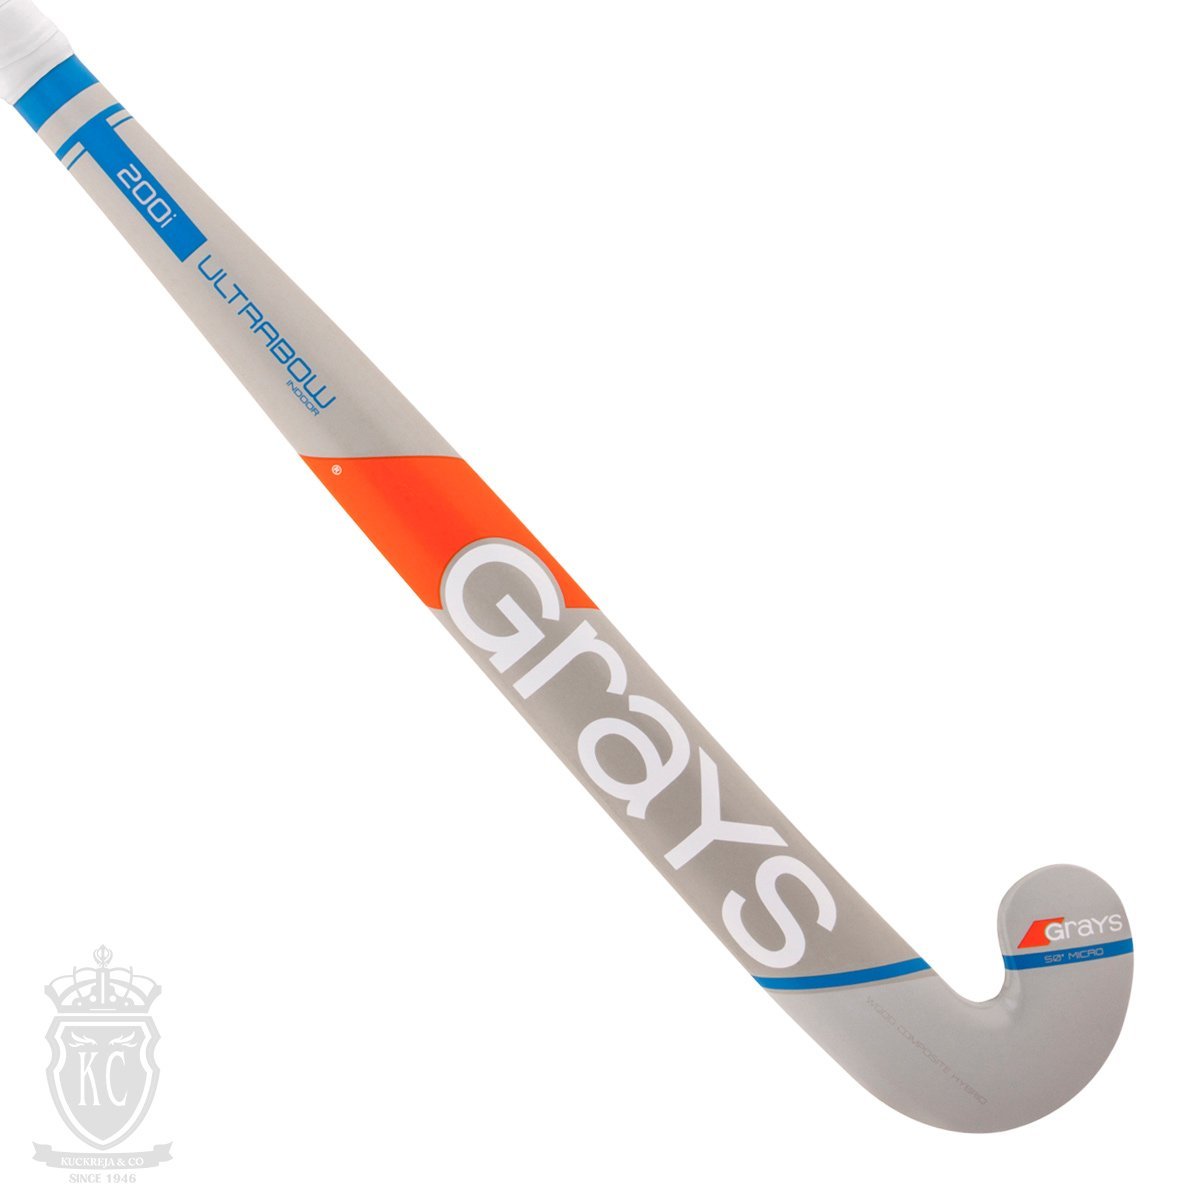 New Yellow Grays Hockey Junior Indoor Exo Hockey Stick 